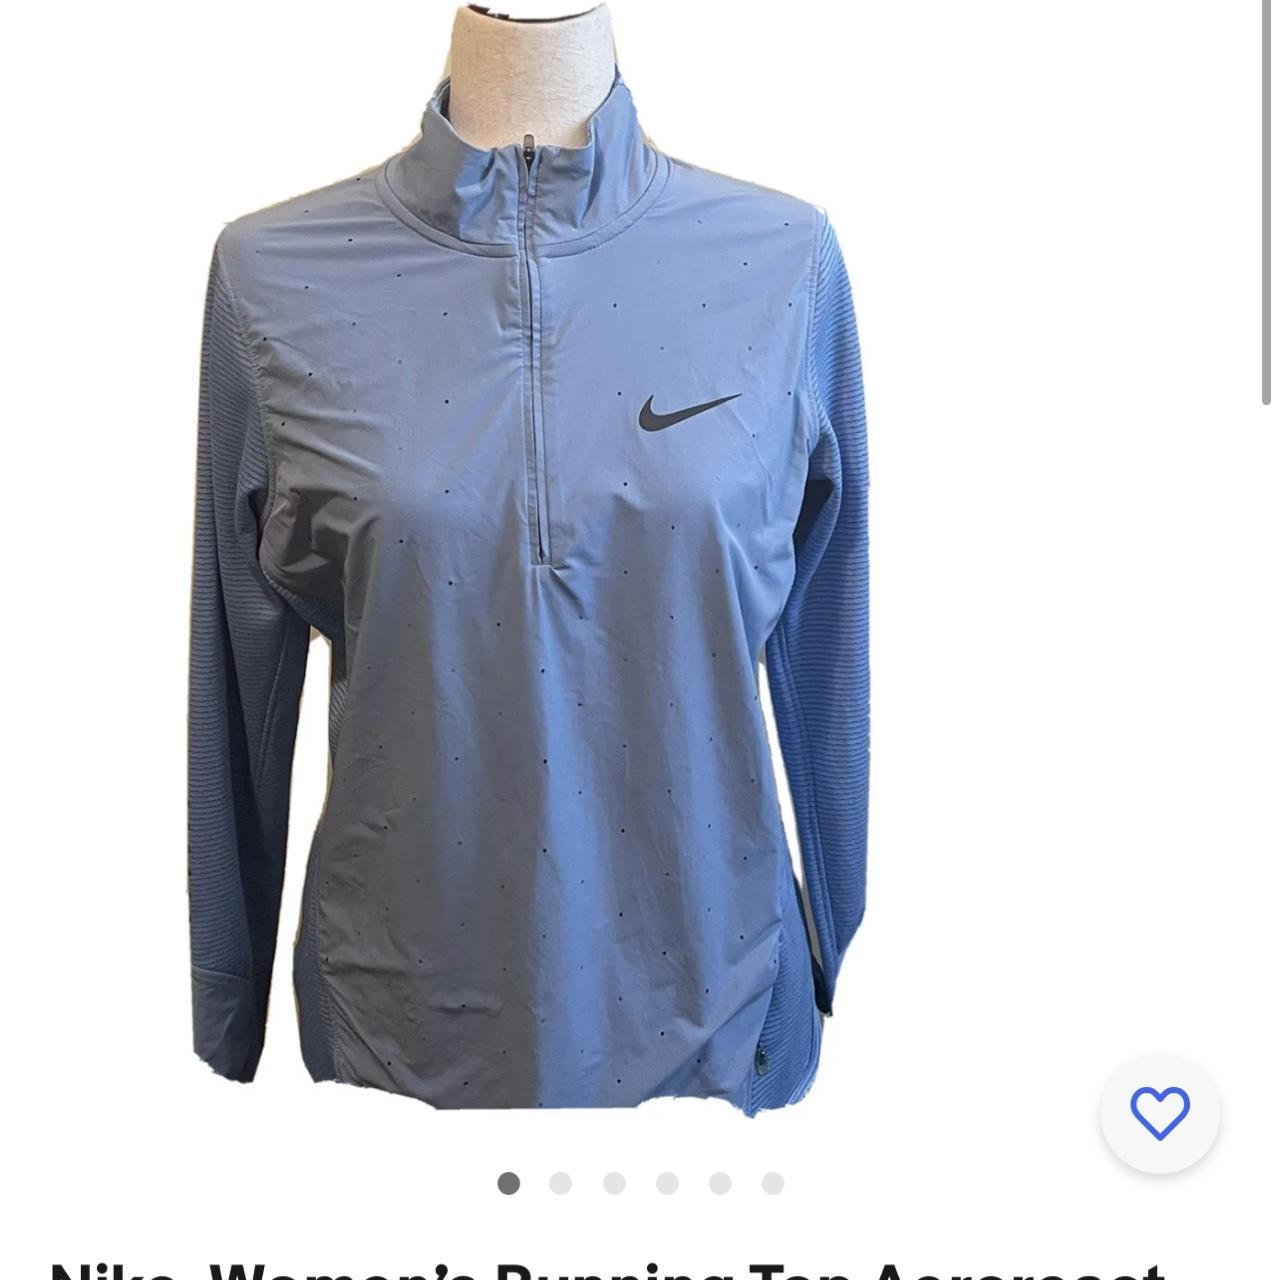 Nike Women's Blue Jacket